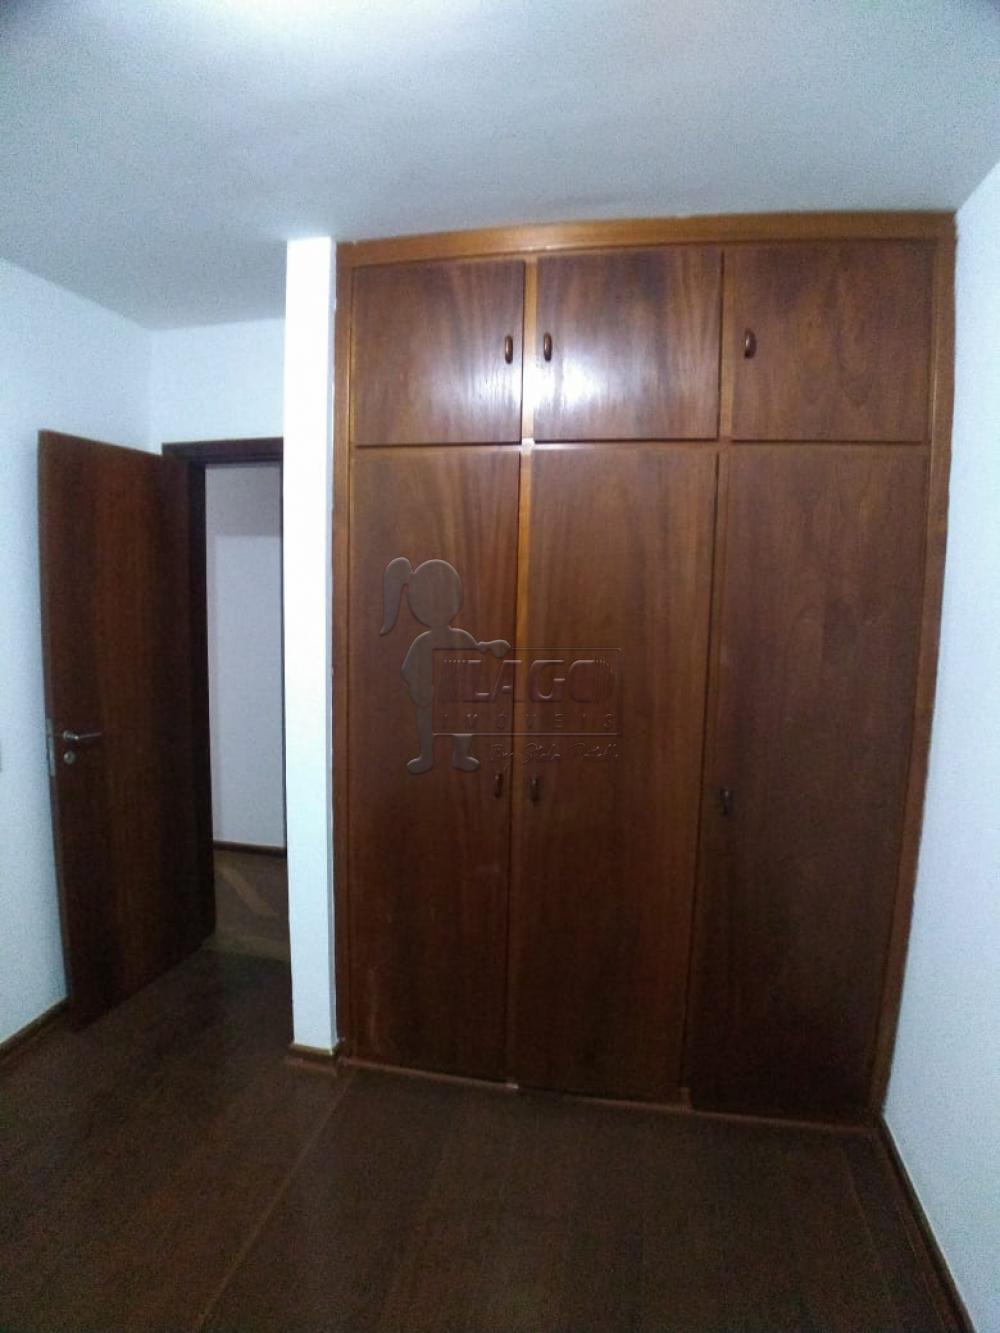 Alugar Apartamentos / Padrão em Ribeirão Preto R$ 1.300,00 - Foto 14